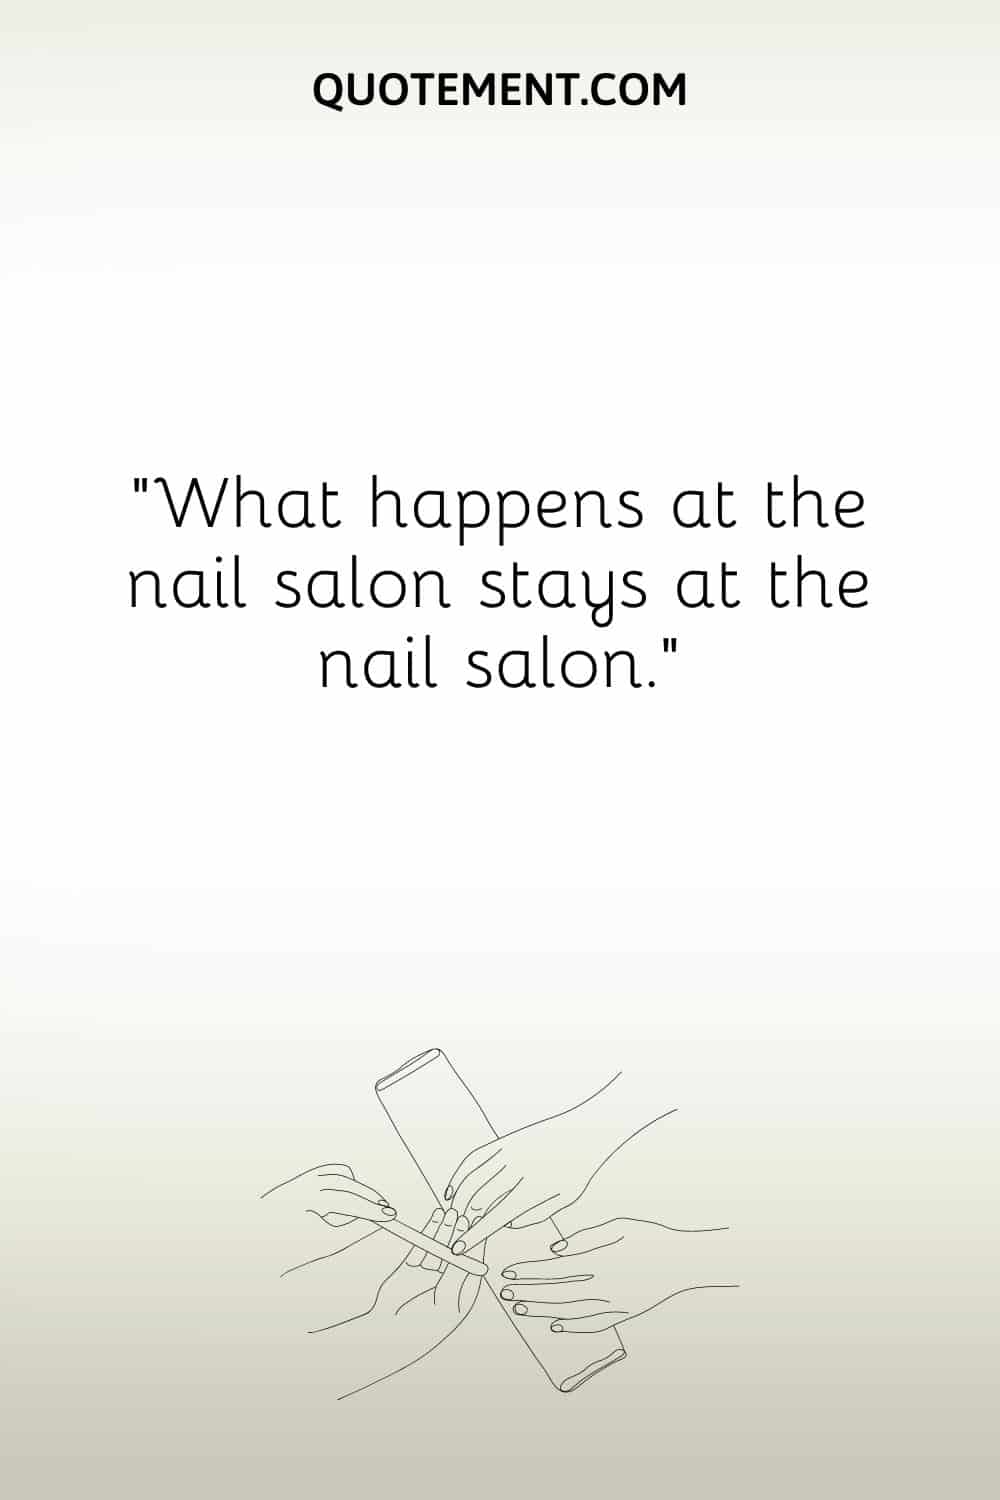 What happens at the nail salon stays at the nail salon